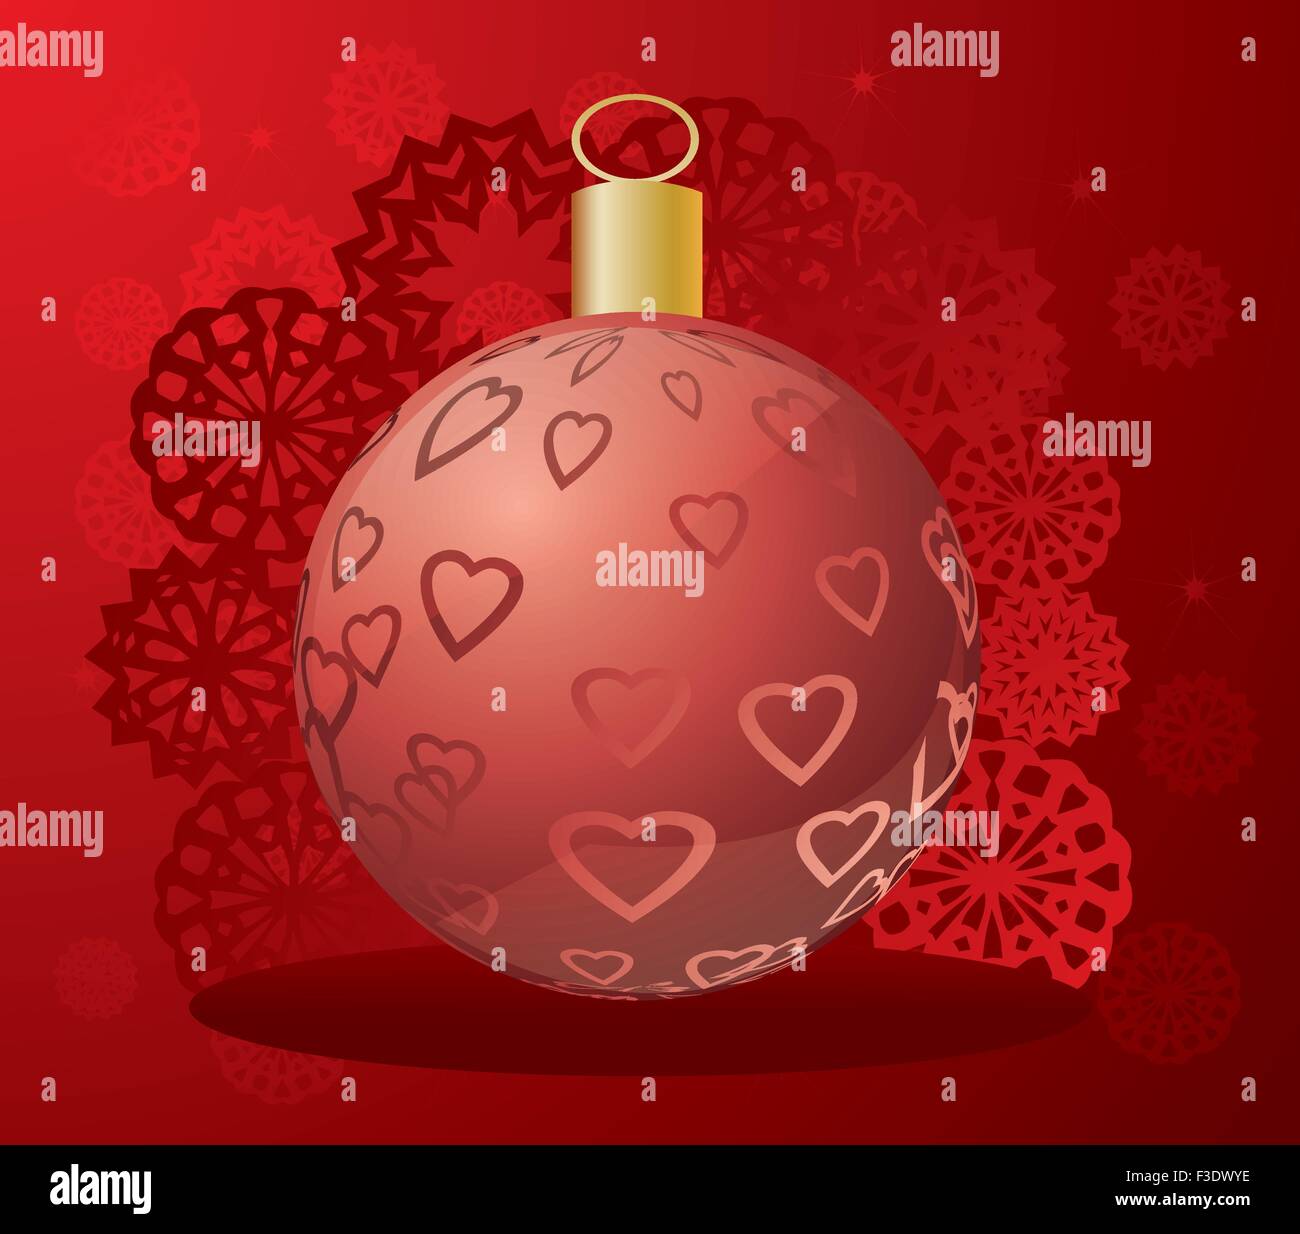 Pallina di natale fatto di cuori / Vector palla di Natale con i fiocchi di neve - Scheda di Natale Illustrazione Vettoriale